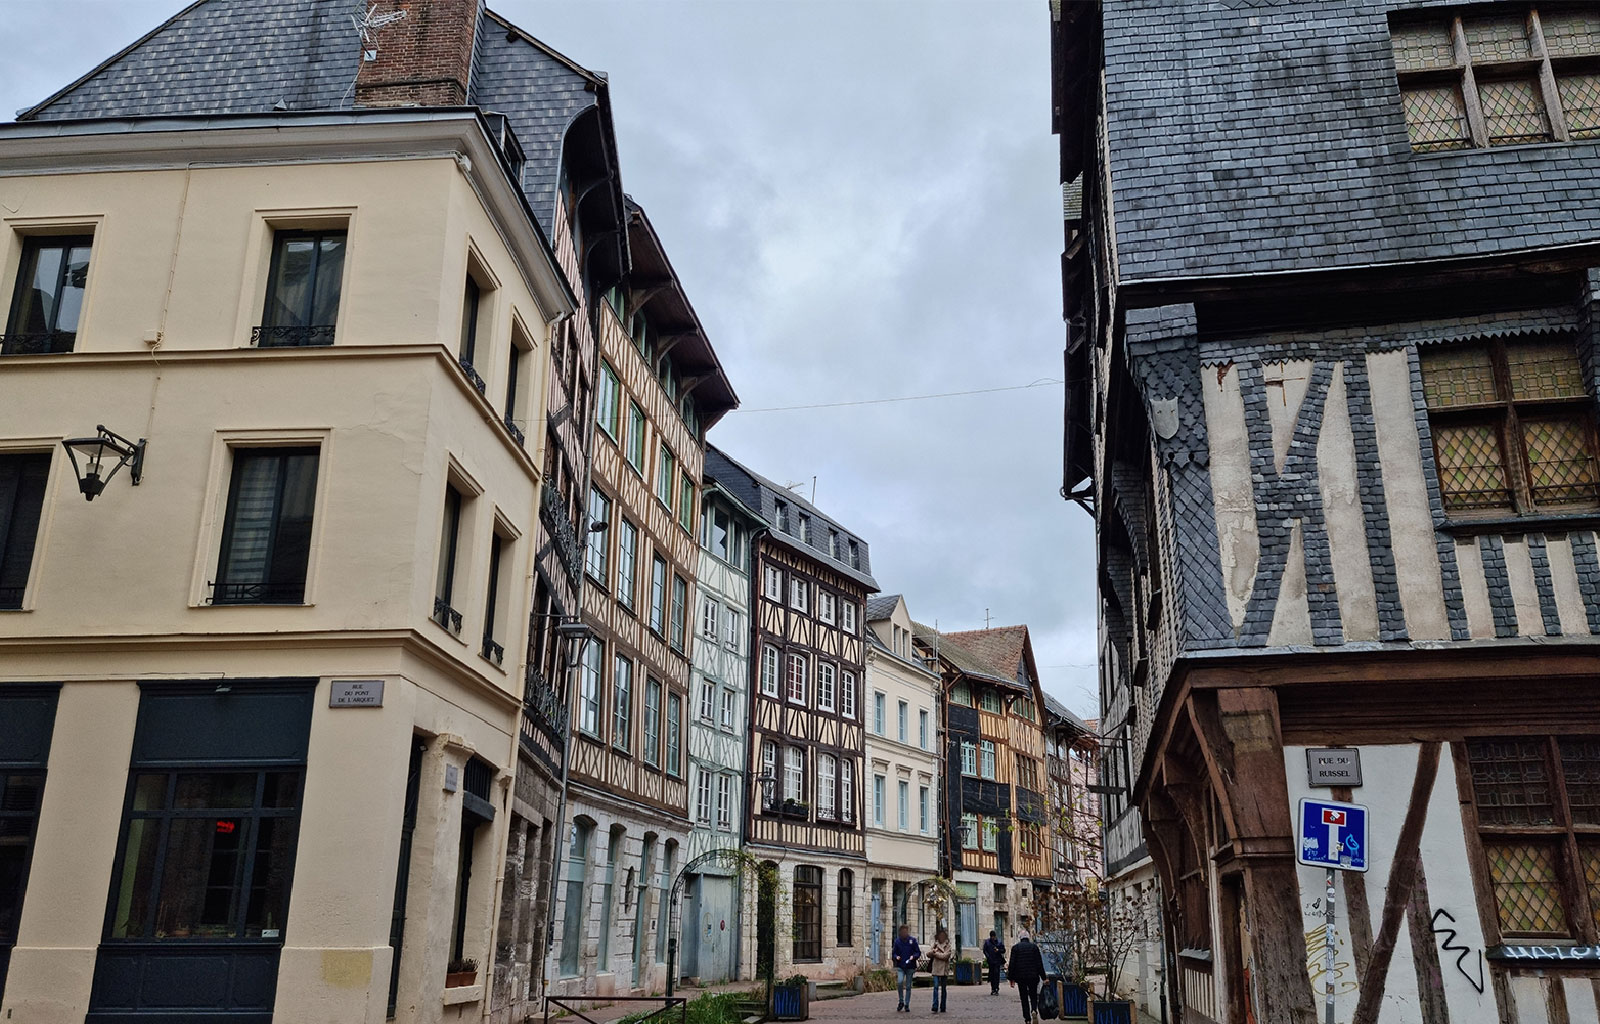 Rue avec maisons à colombages Rouen